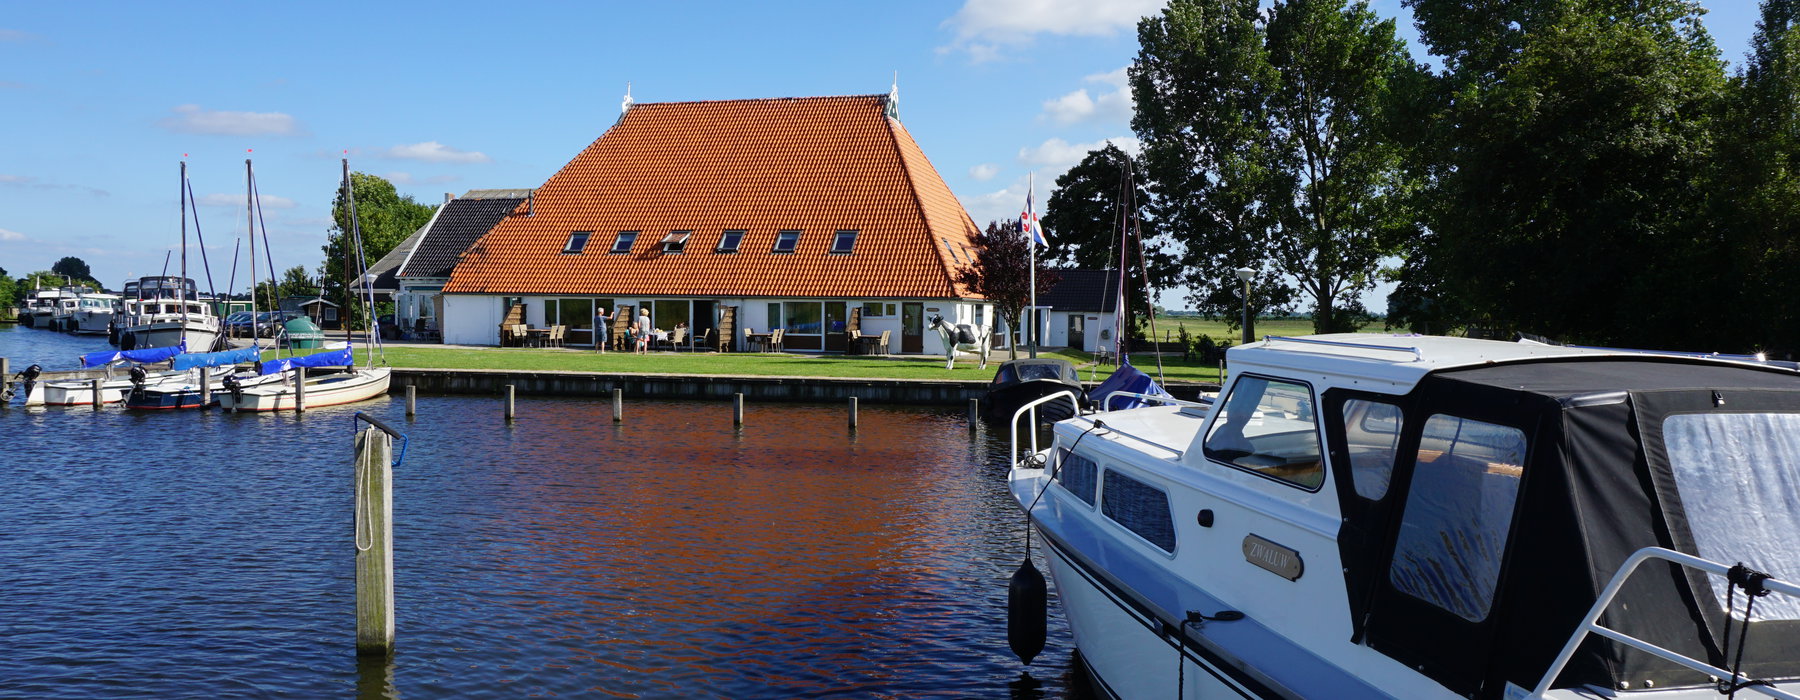 Ferienwohnung mit Boot in Holland mieten